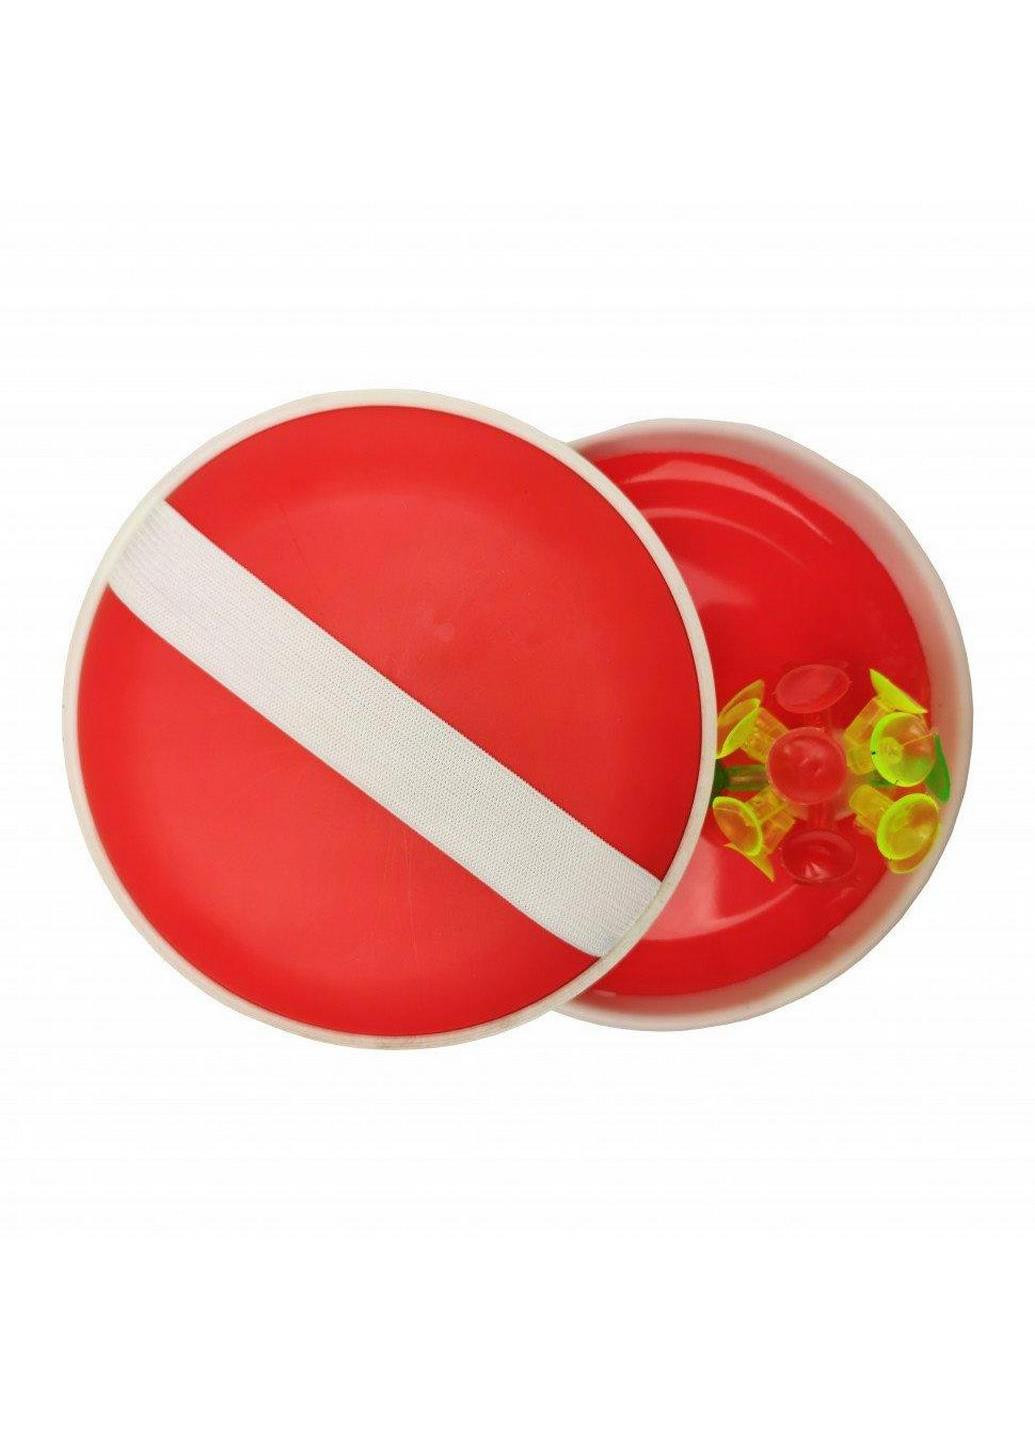 Детская игра "Ловушка" M 2872 мяч на присосках 15 см (Красный) Metr+ (238104579)